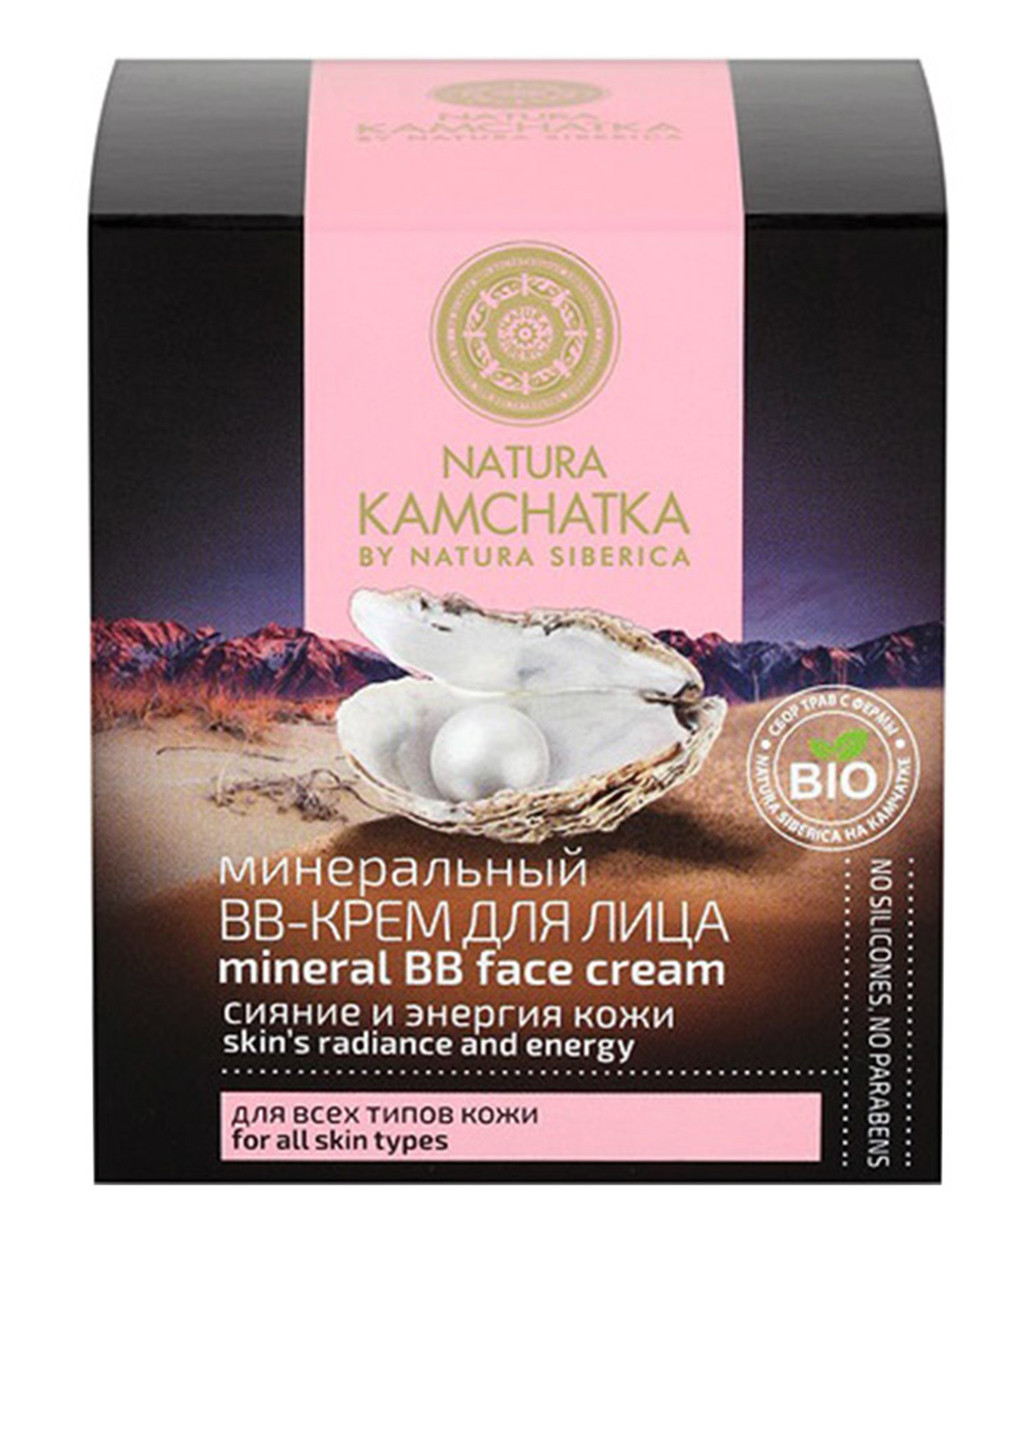 BB-крем минеральный Сияние и энергия кожи Natura Kamchatka, 50 мл Natura Siberica (87236444)